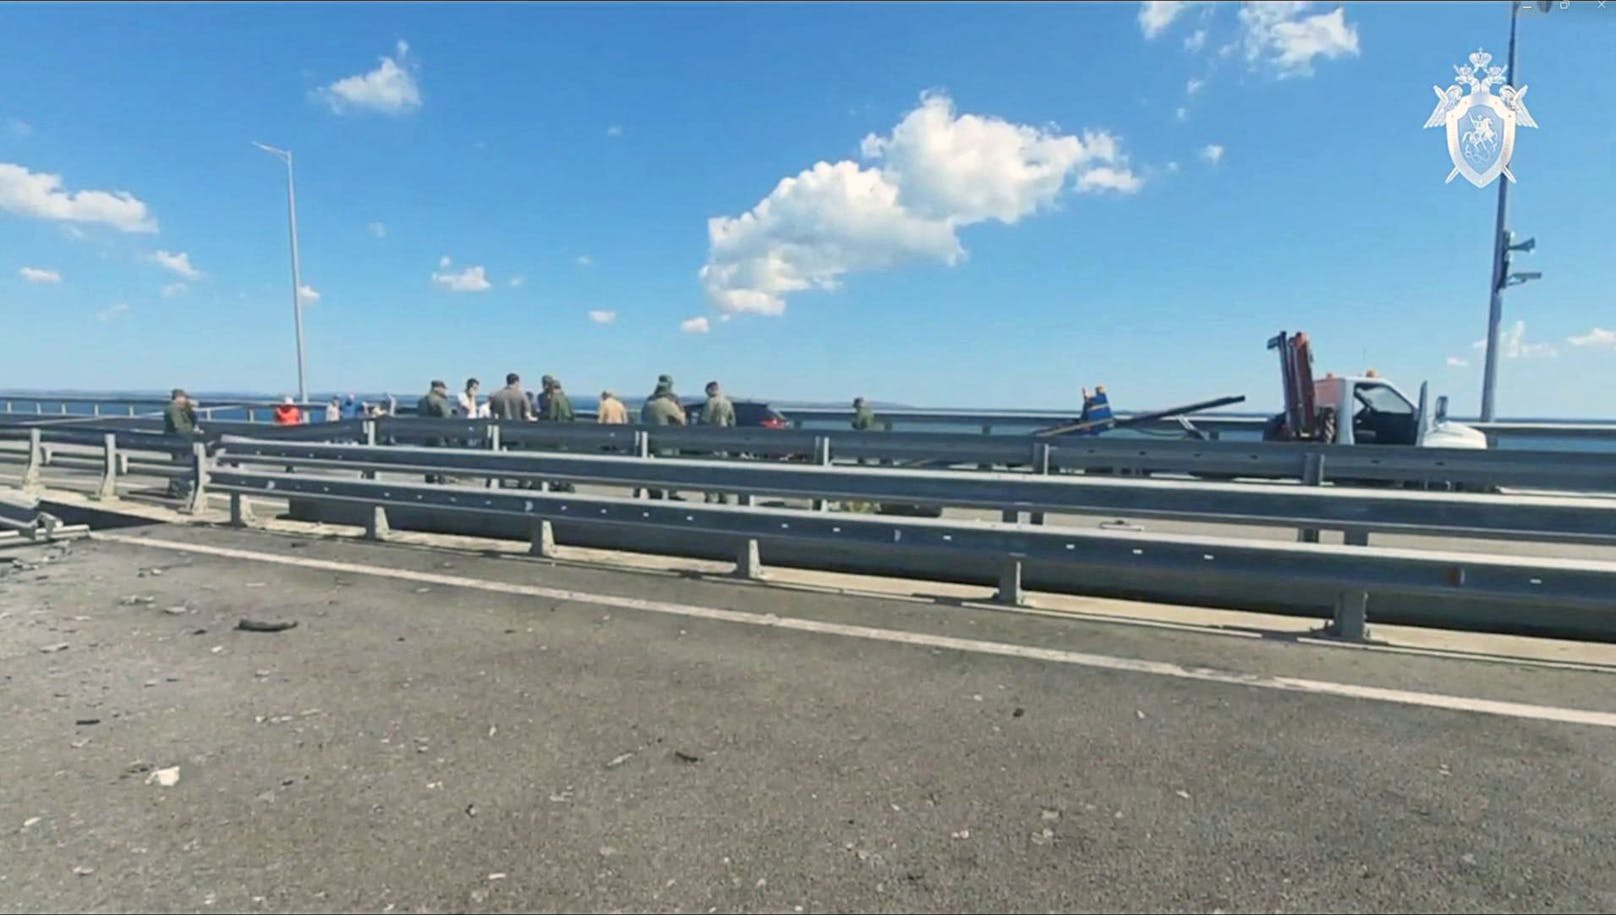 Die Ukraine reklamierte den Angriff auf Krim-Brücke später für sich: Es sei eine "Spezialoperation" des Inlandsgeheimdienstes SBU und der Marine gewesen.